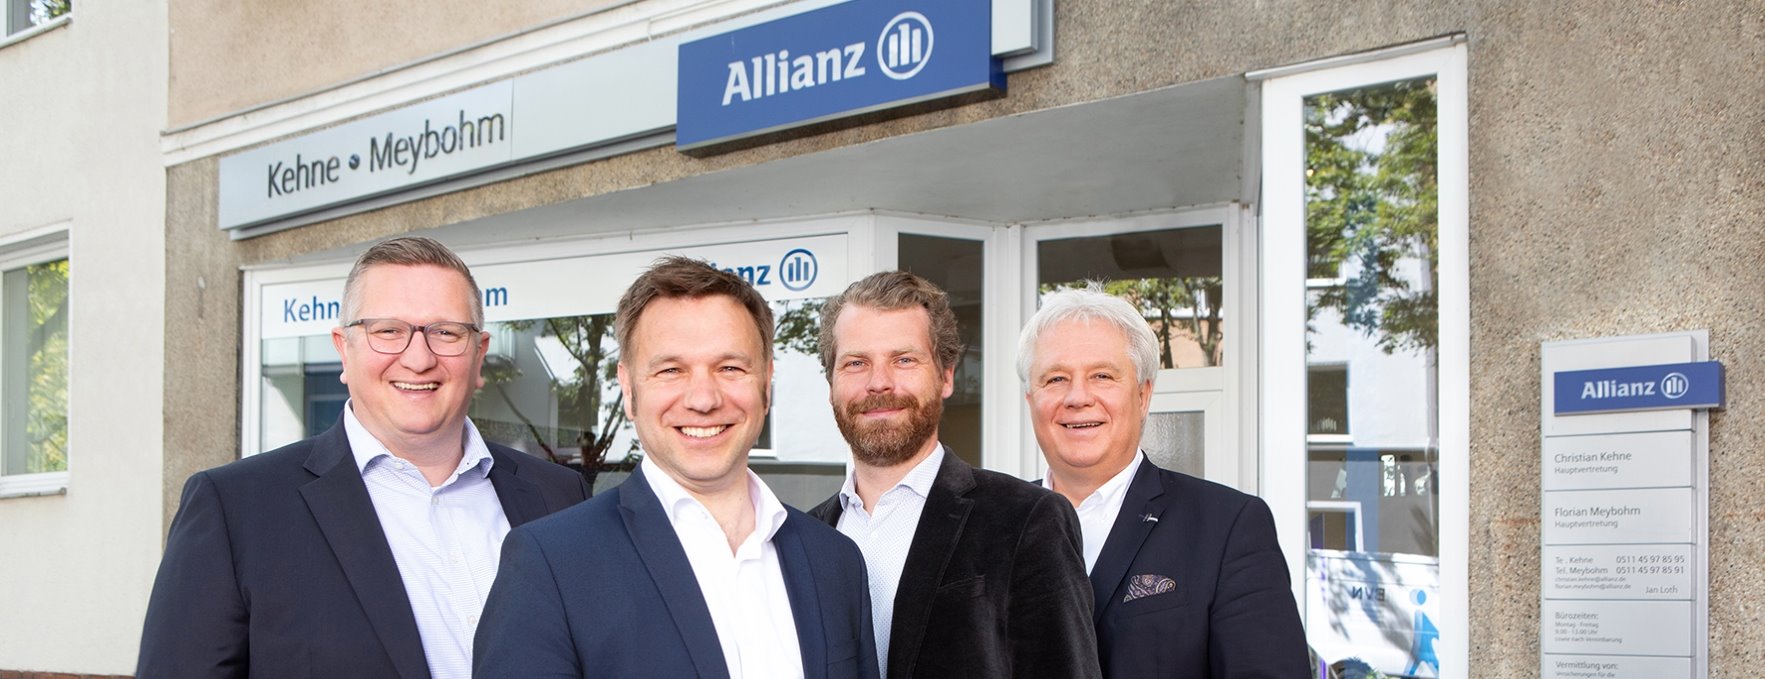 Allianz Versicherung Christian Kehne Hannover - Unser Team